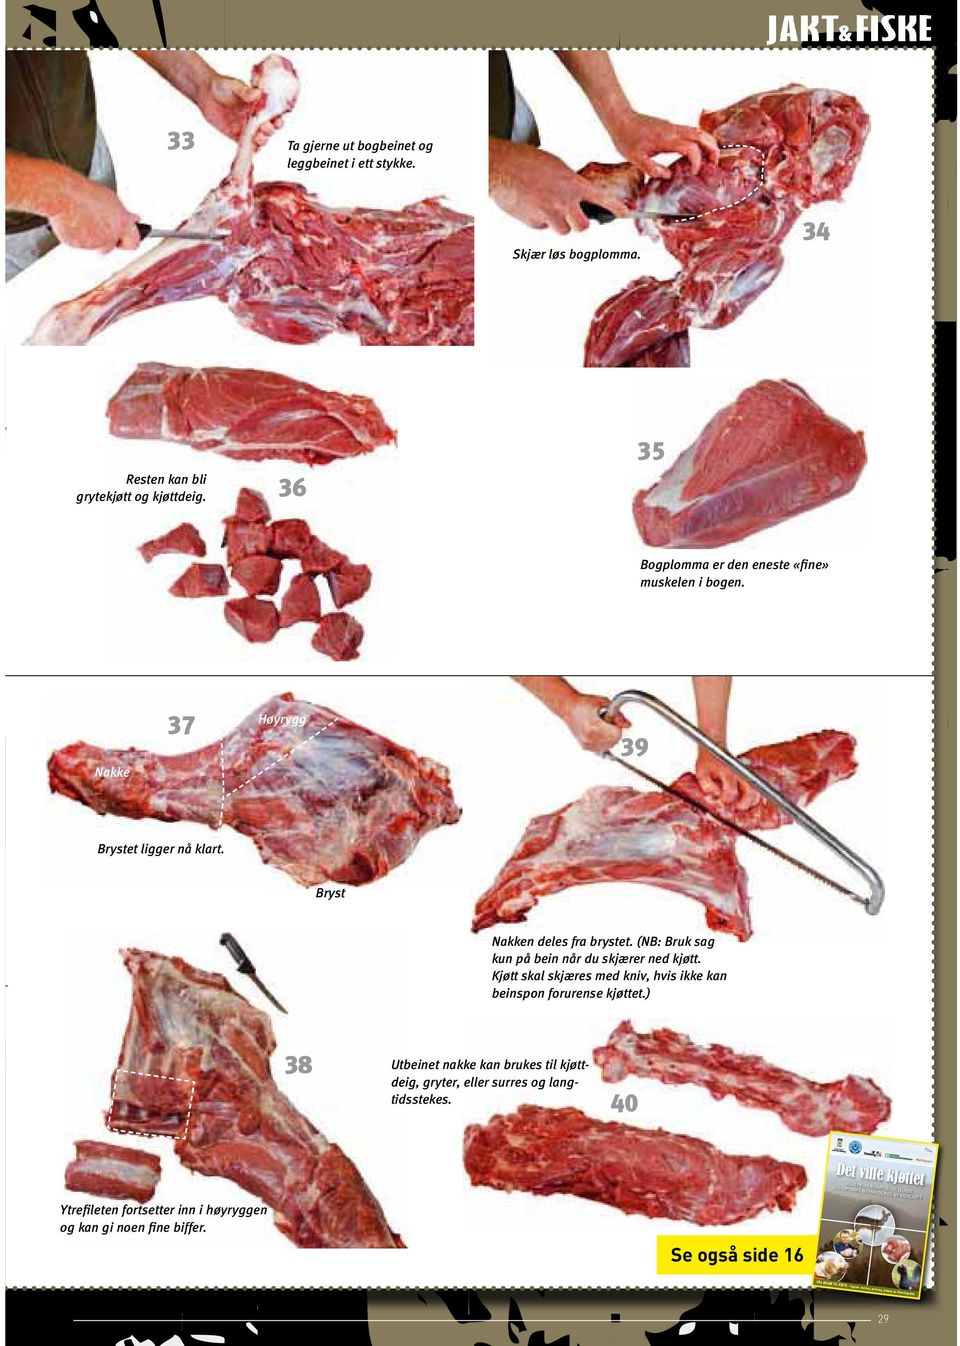 Kjøtt skal skjæres med kniv, hvis ikke kan beinspon forurense kjøttet.) 38 Utbeinet nakke kan brukes til kjøttdeig, gryter, eller surres og langtidsstekes.